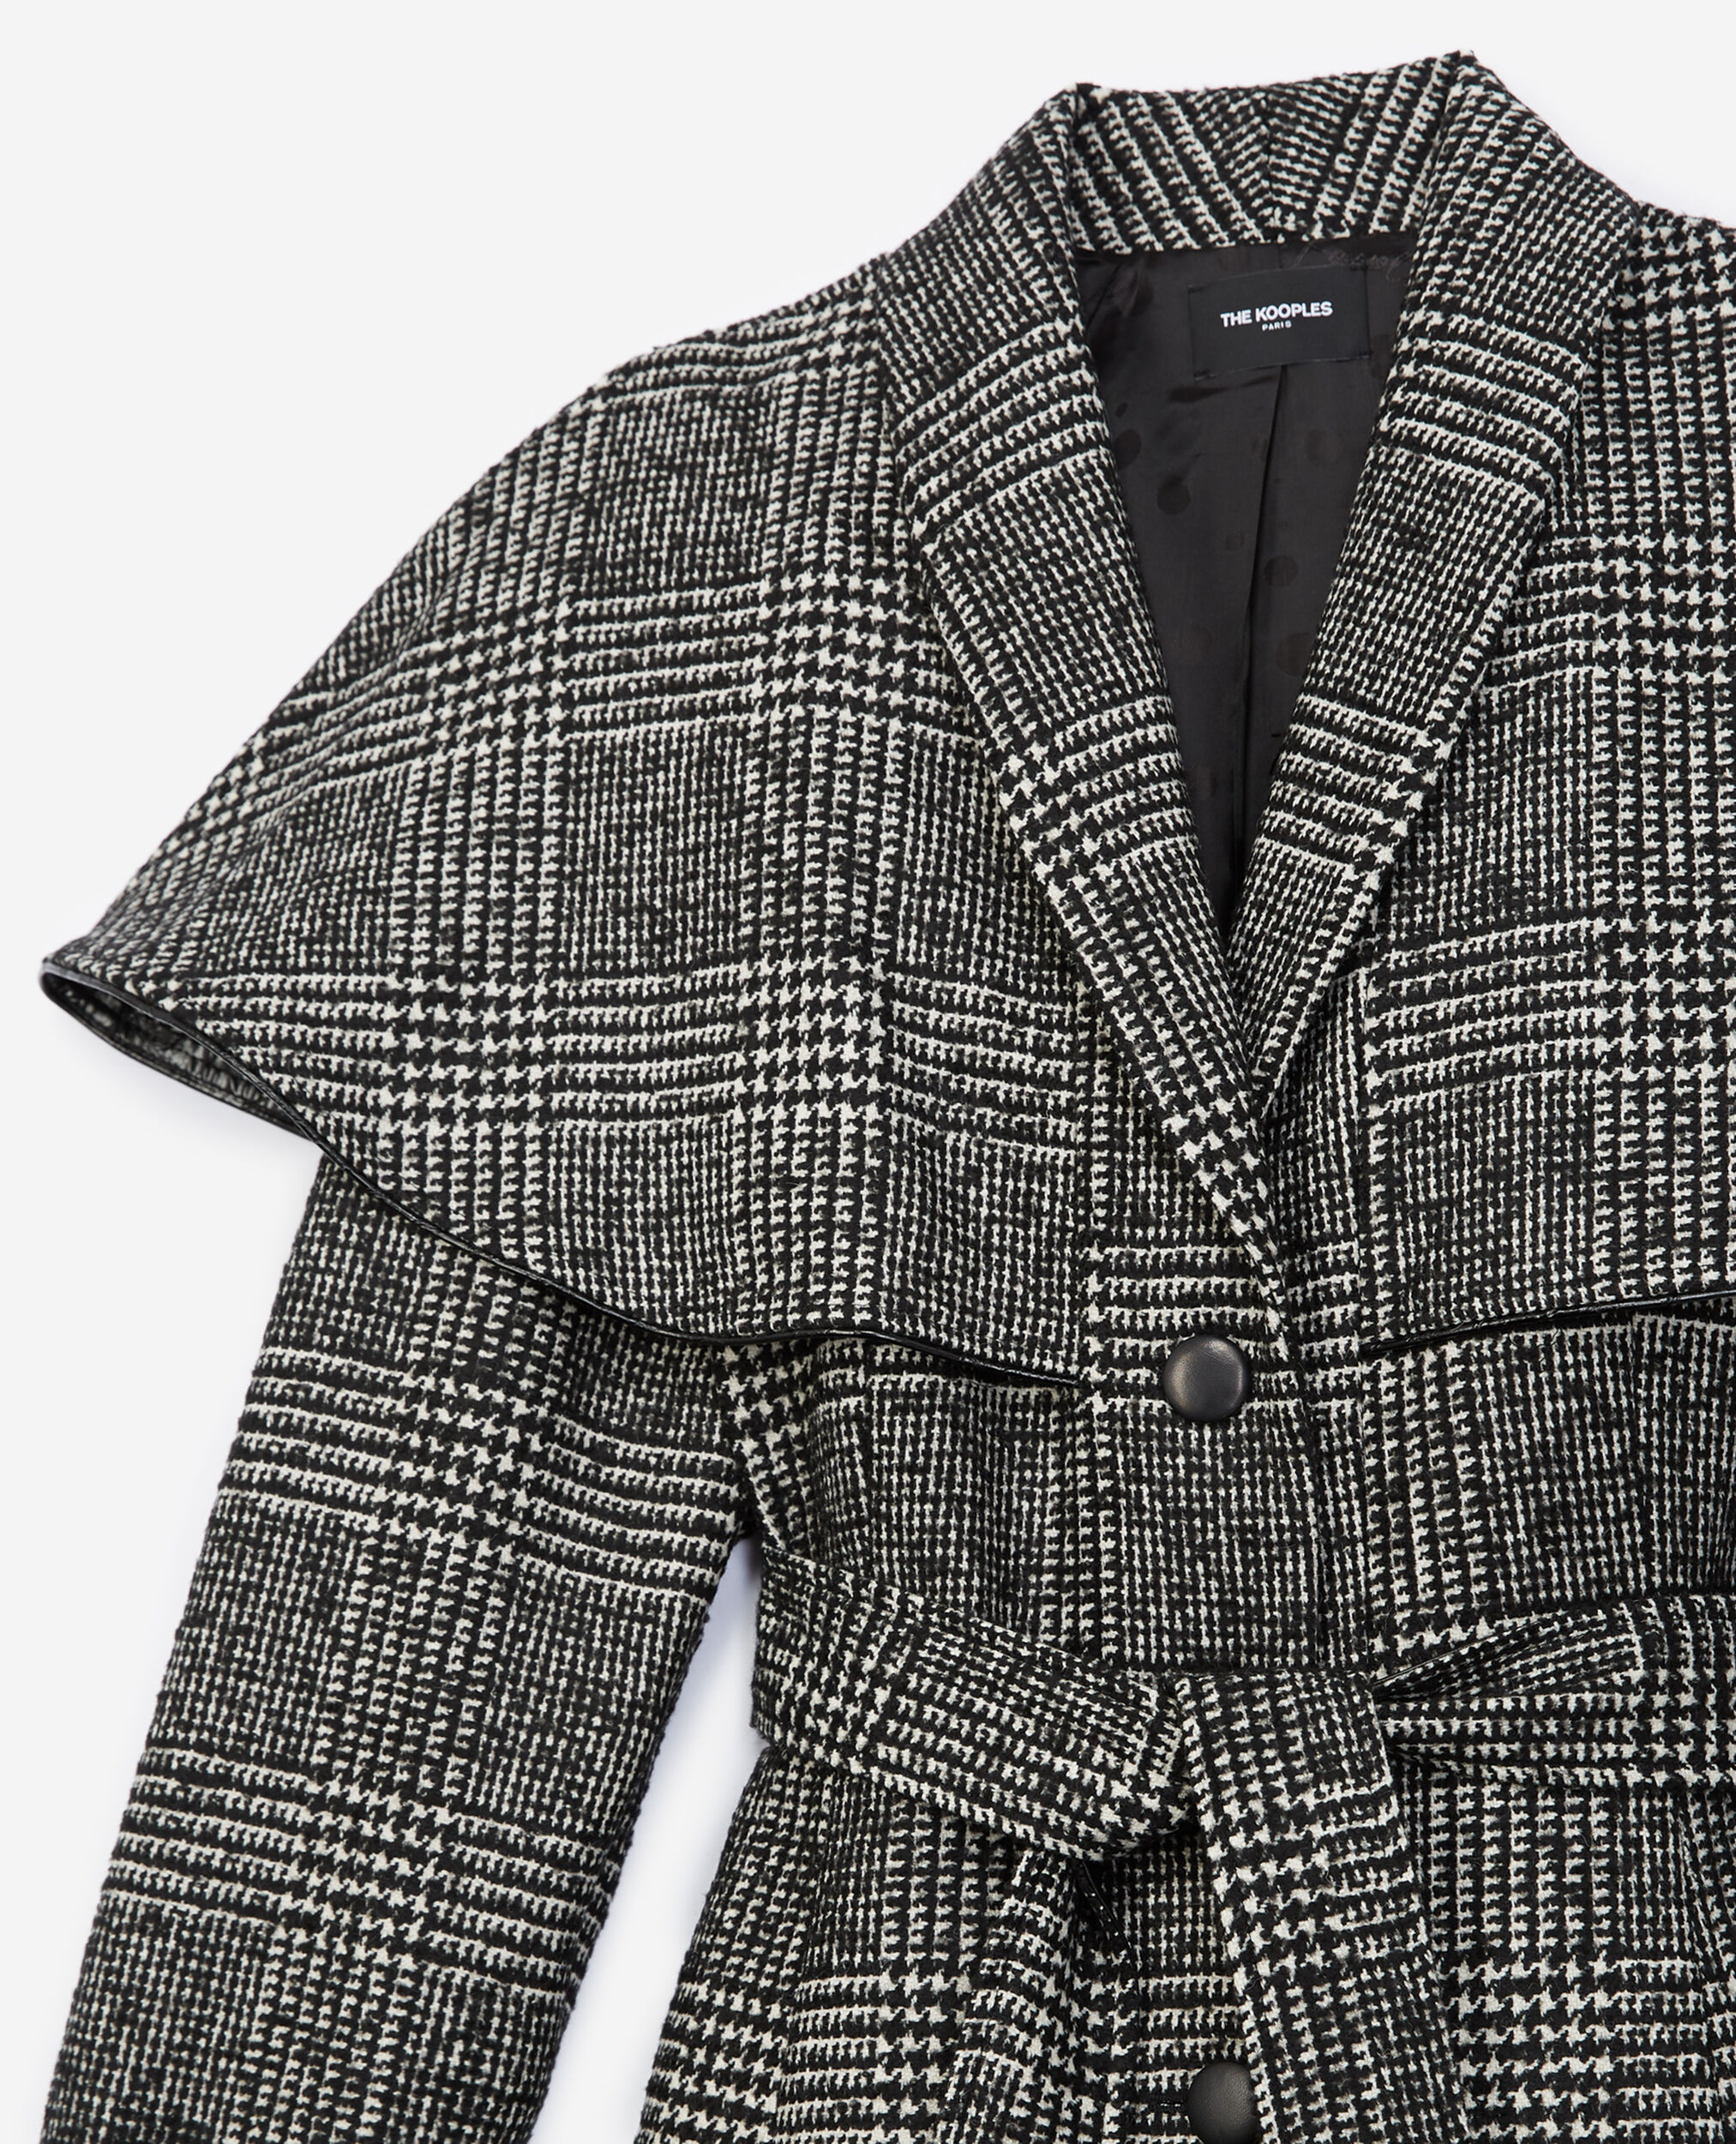 Manteau laine bicolore façon cape, BLACK WHITE, hi-res image number null